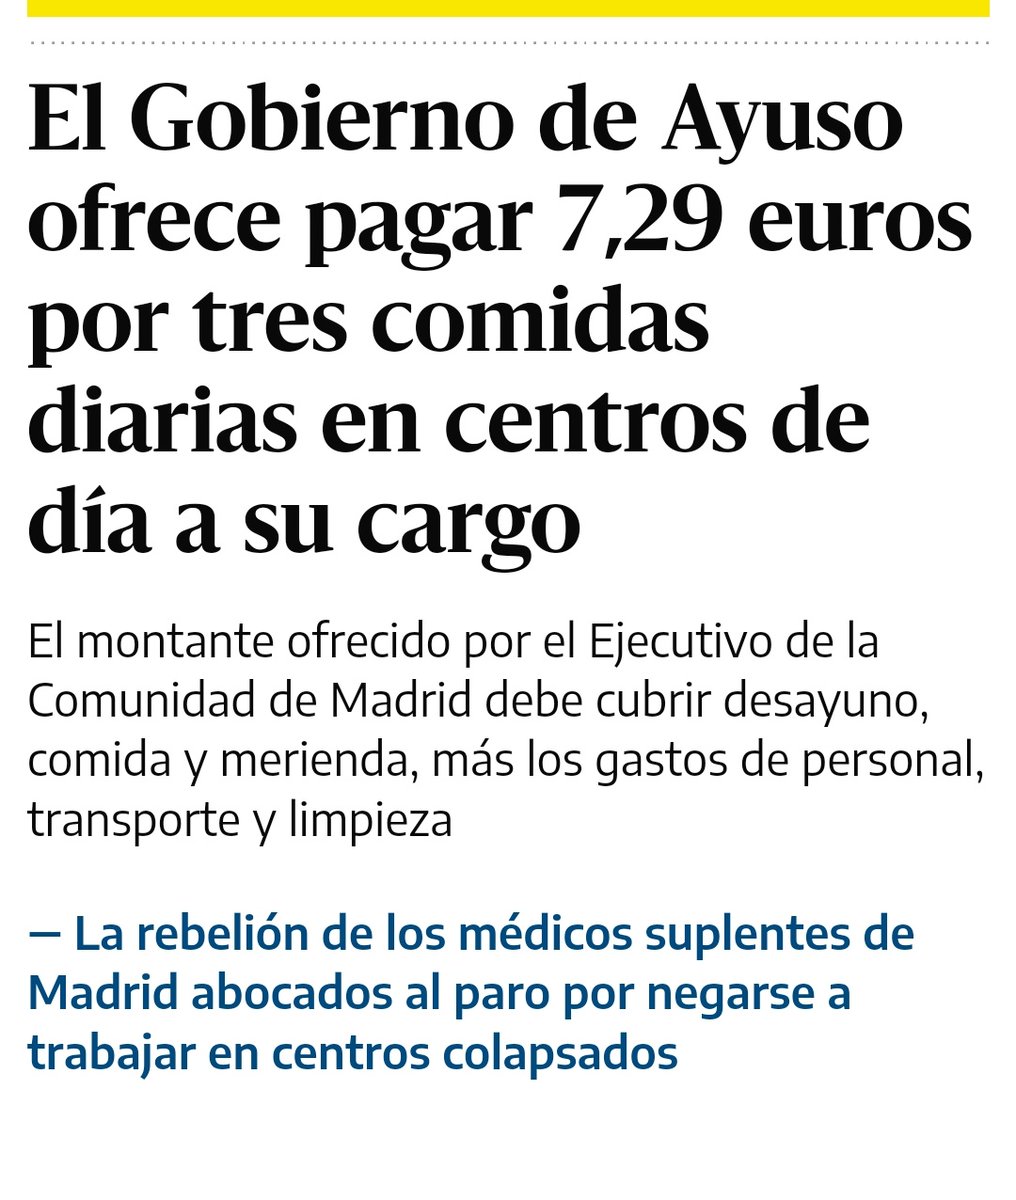 Miguel Ángel Rodríguez, jefe de gabinete de Ayuso: 11.000 euros al año en 'comidas de trabajo'. Tu abuelo: 7,29 euros al día por las tres comidas.